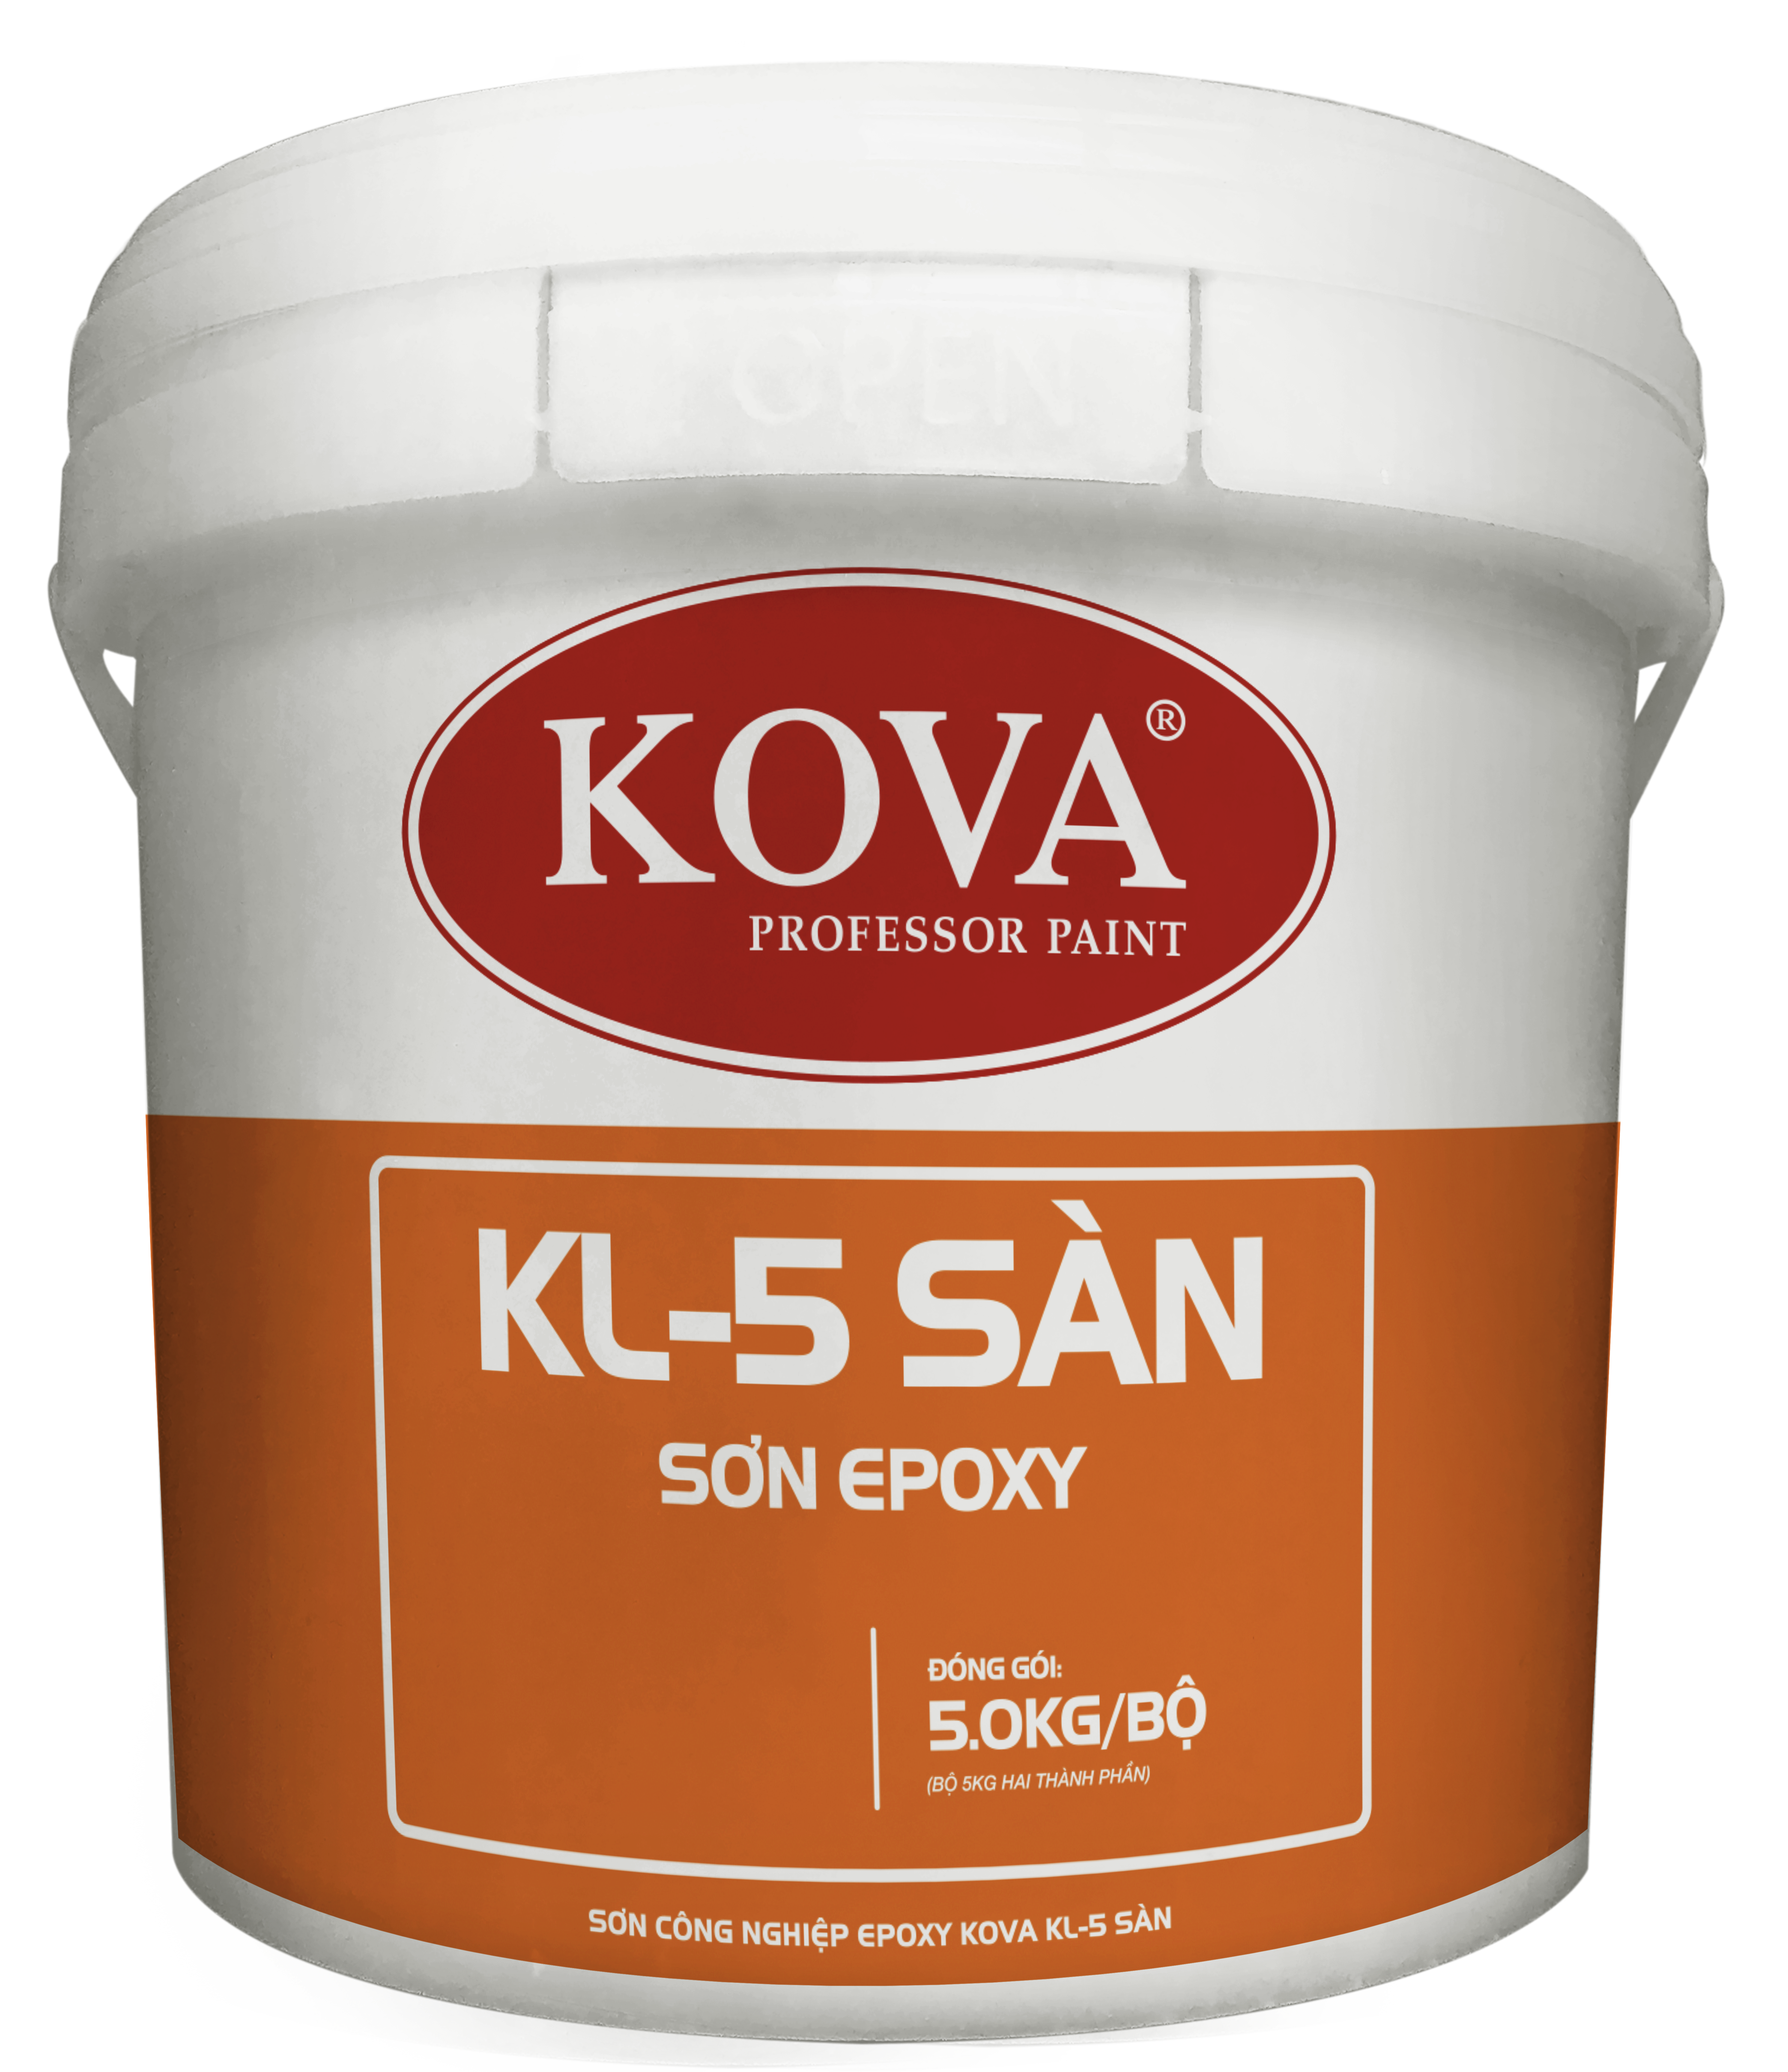 Sơn công nghiệp Kova epoxy KL-5 sàn được thiết kế đặc biệt để sử dụng cho các loại sàn công nghiệp và thương mại. Với độ bền cao và độ bám dính tốt, sản phẩm này sẽ mang lại hiệu suất hoàn hảo cho bề mặt sàn của bạn.